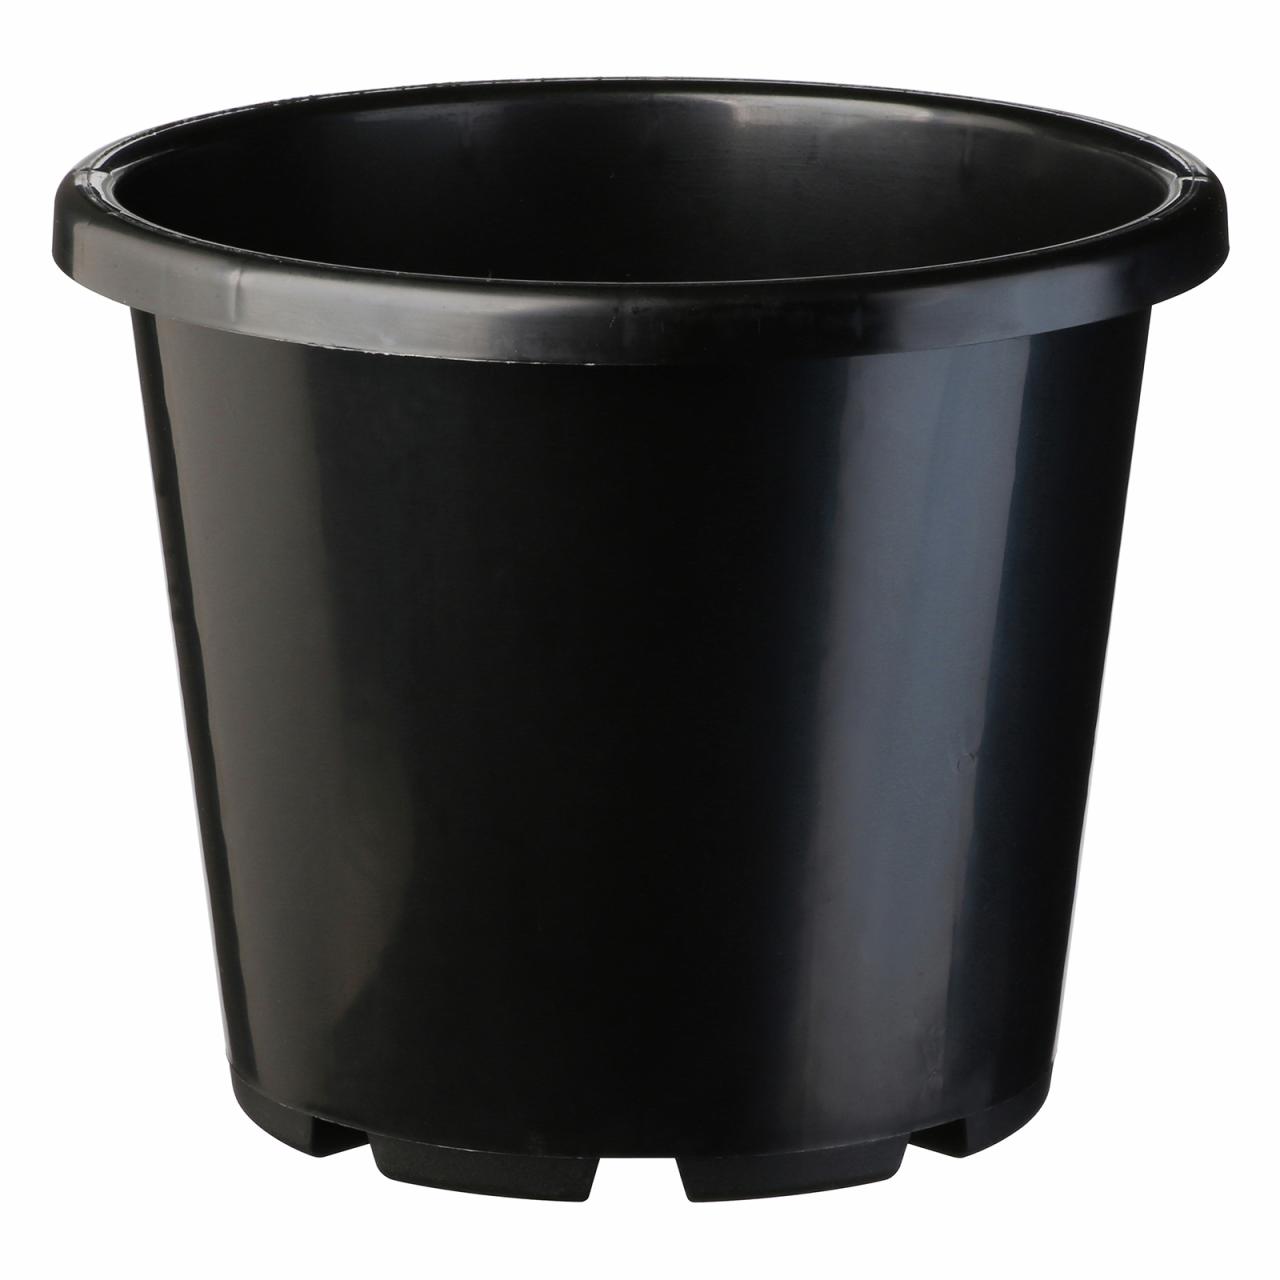 Hanging Plants Indoor | Bunnings Black Plastic Pot: A Versatile Solution for Gardening